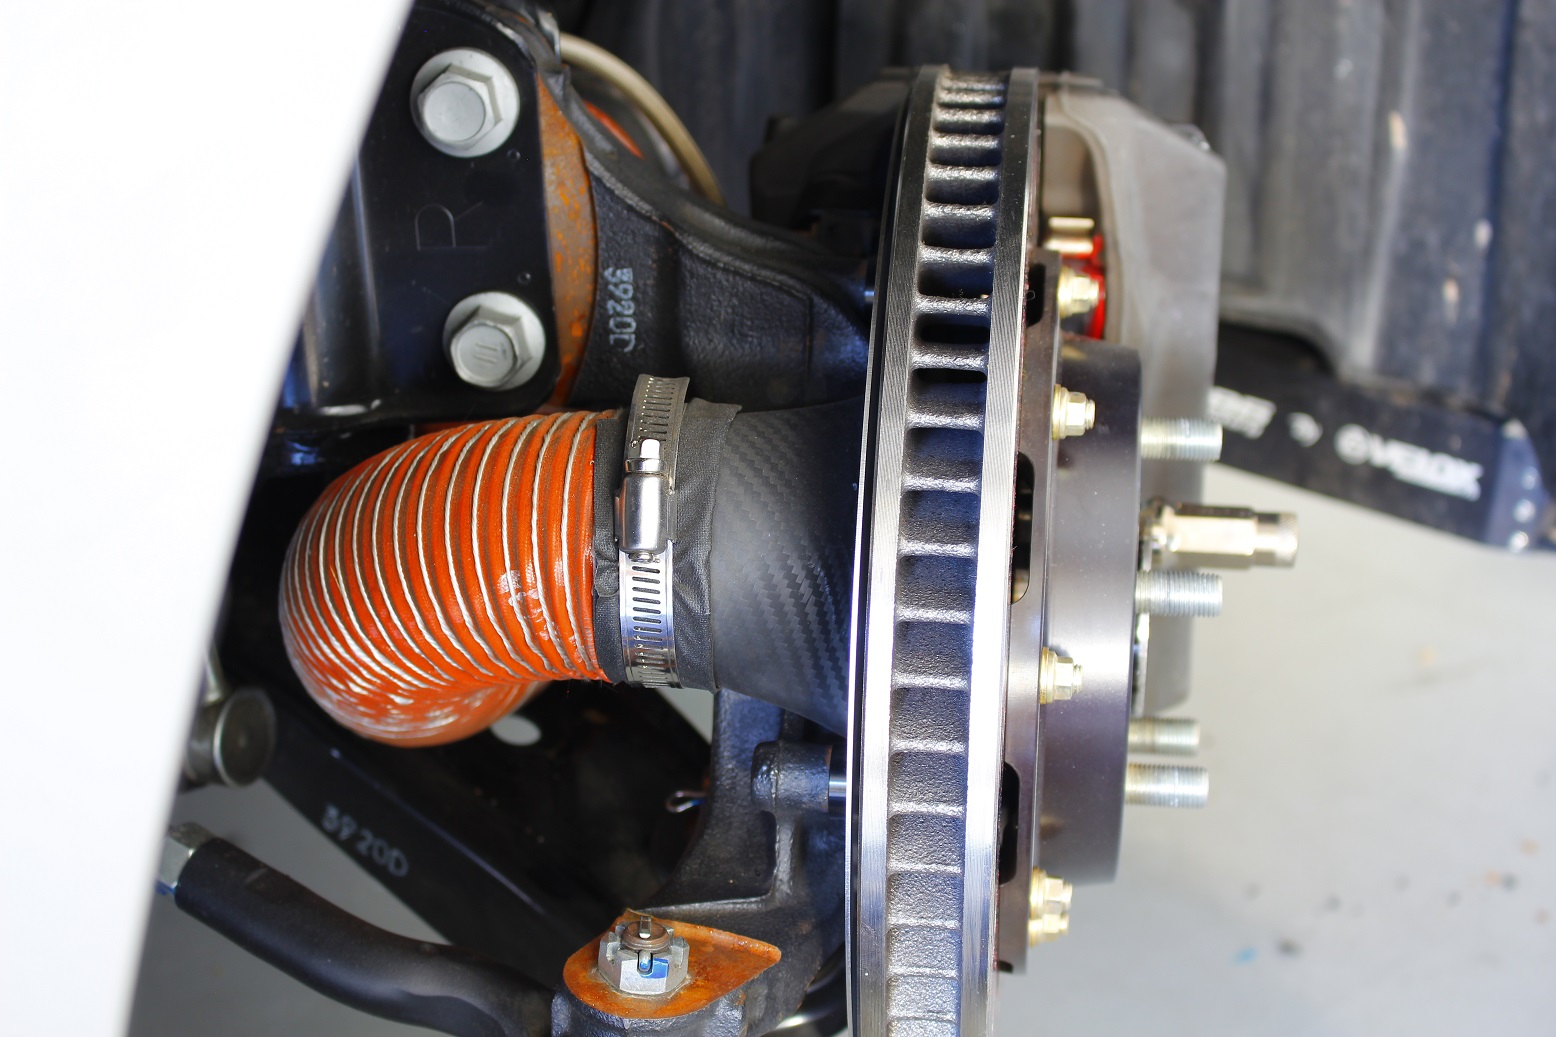 Brake cooling kit installed on Subaru BRZ.